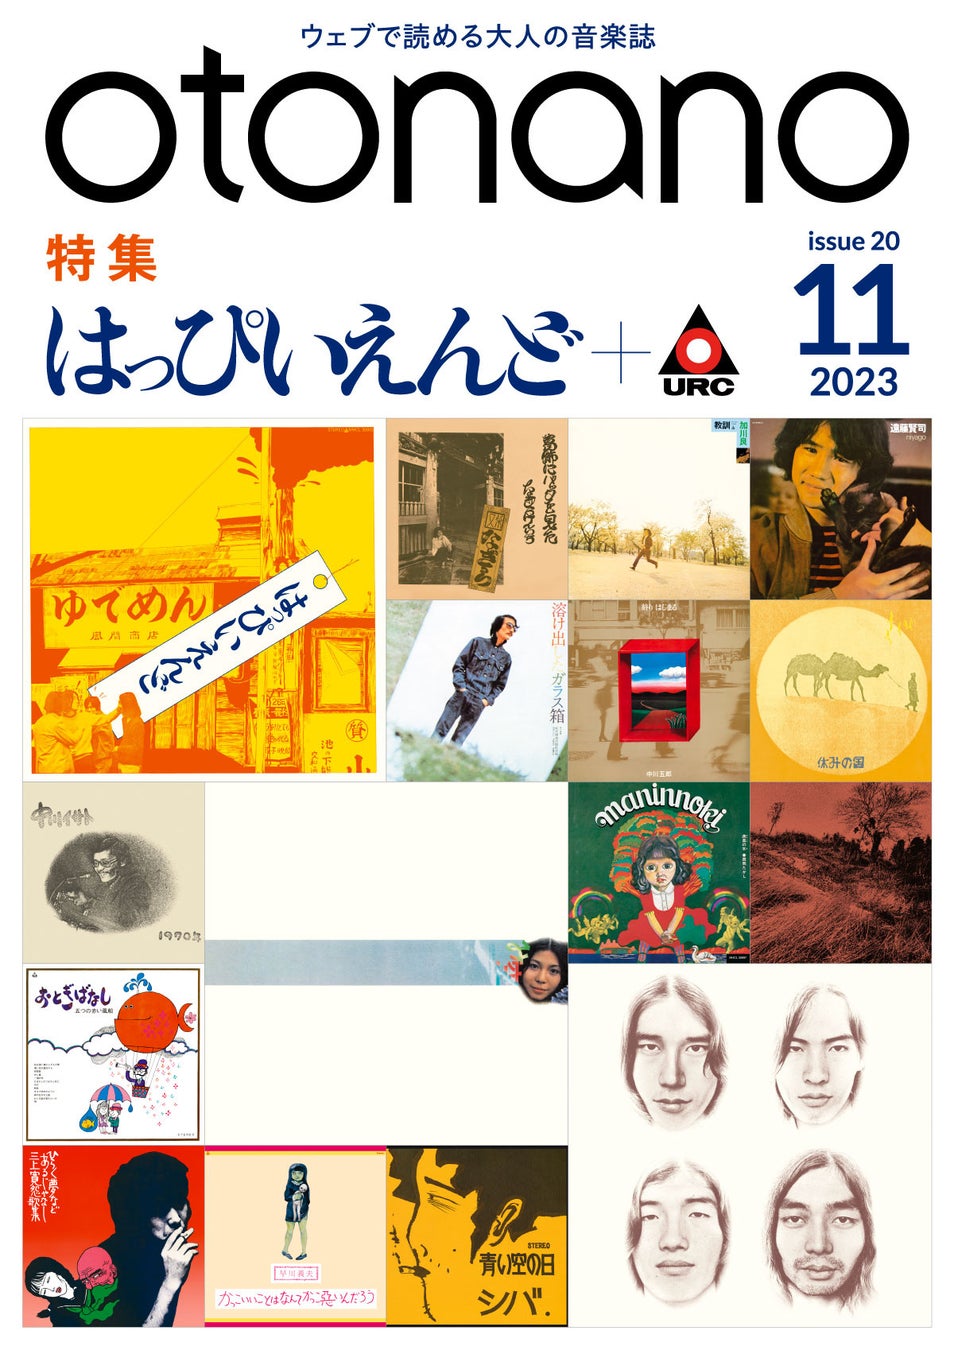 ウェブで読める大人の音楽誌「otonano」11月号が11月1日（水）配信スタート。日本語ロックの始祖と日本初のインディレーベルにフォーカスし、「はっぴいえんど＋URCレコード」を大特集!!